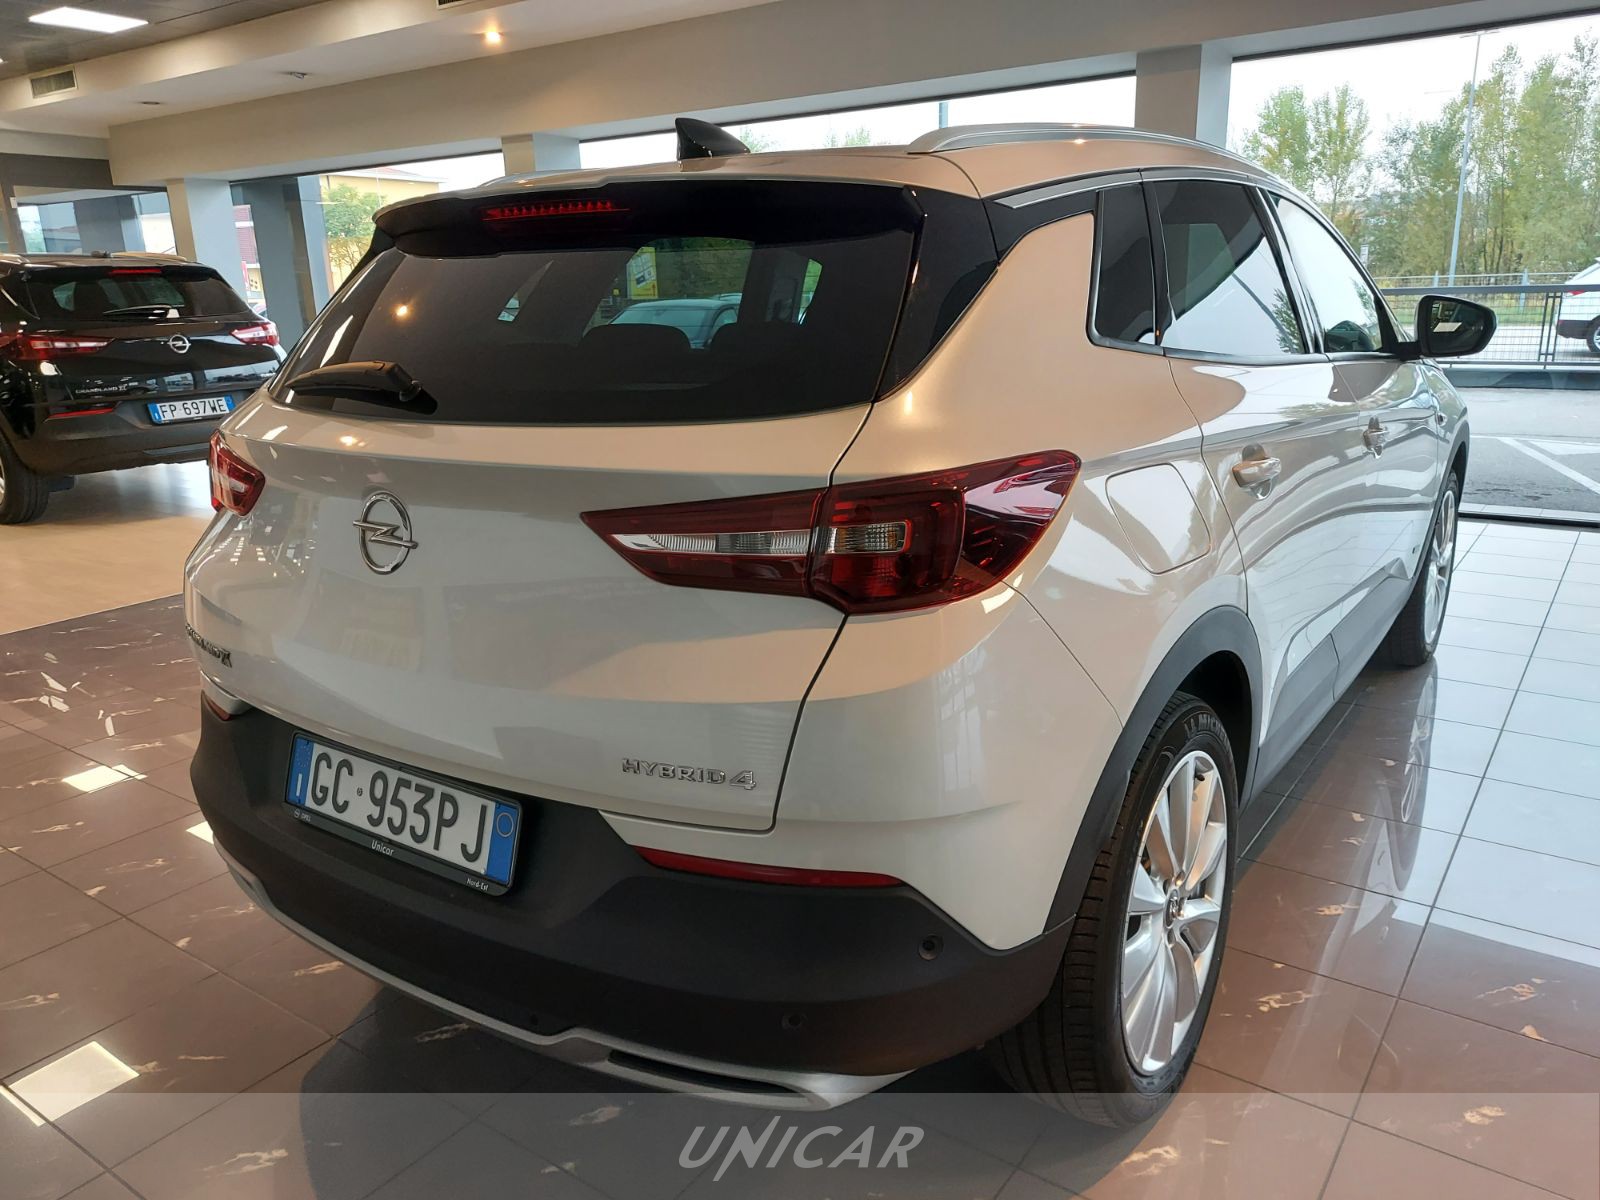 UNICAR Opel Grandland X